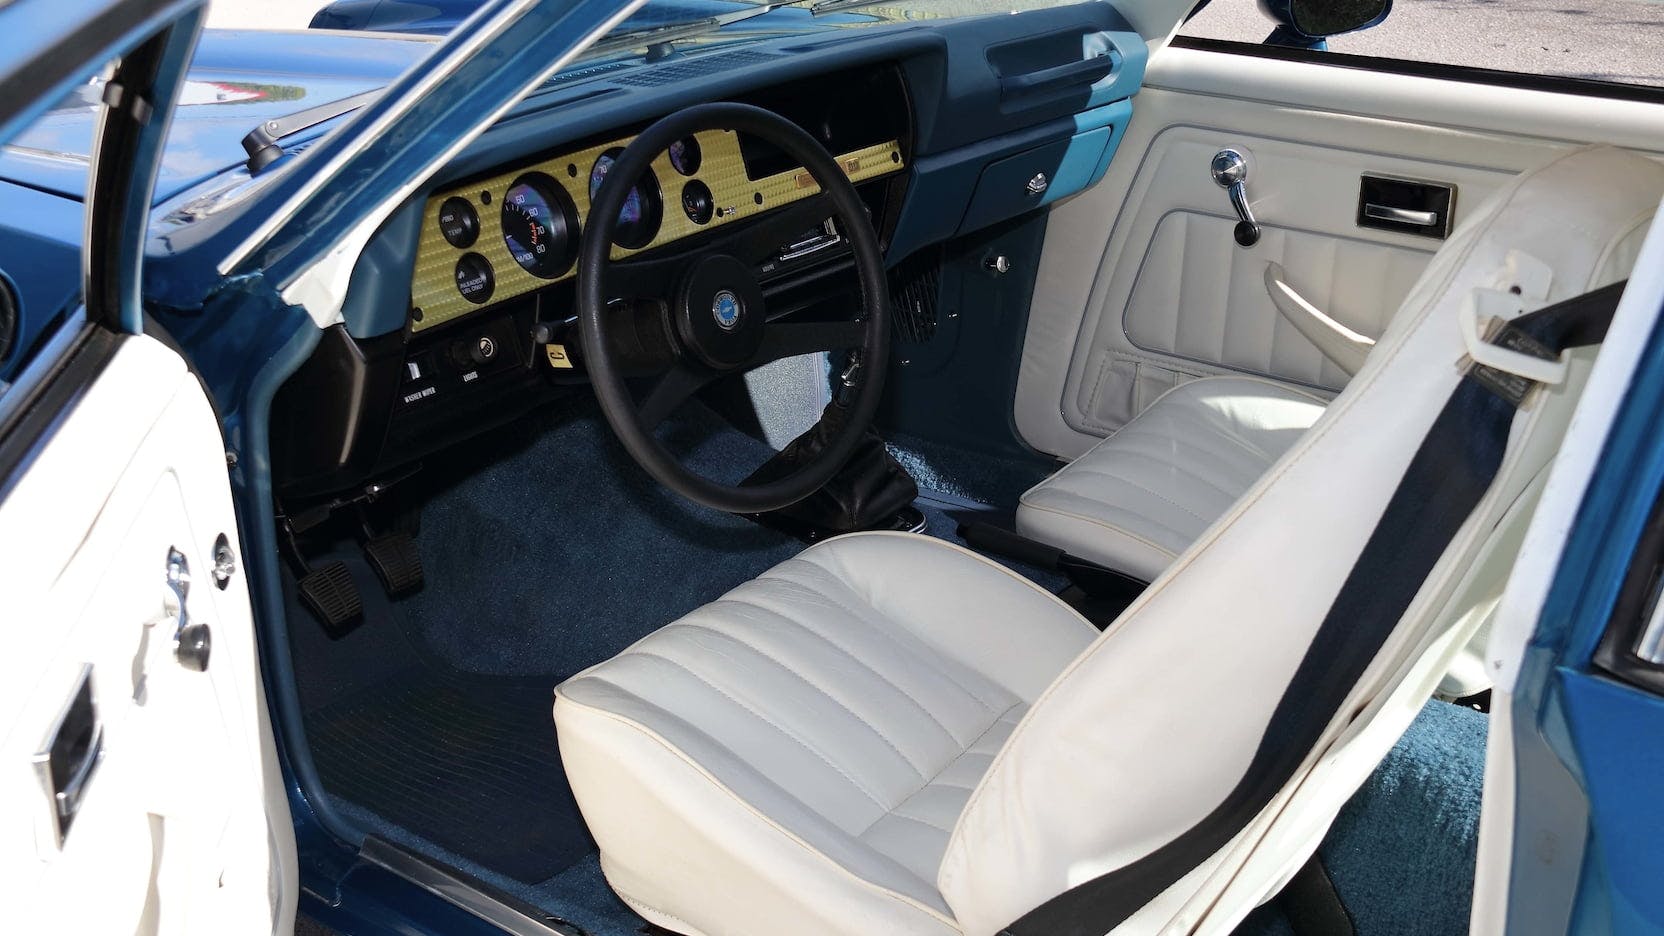 1976 Chevrolet Cosworth Vega interior